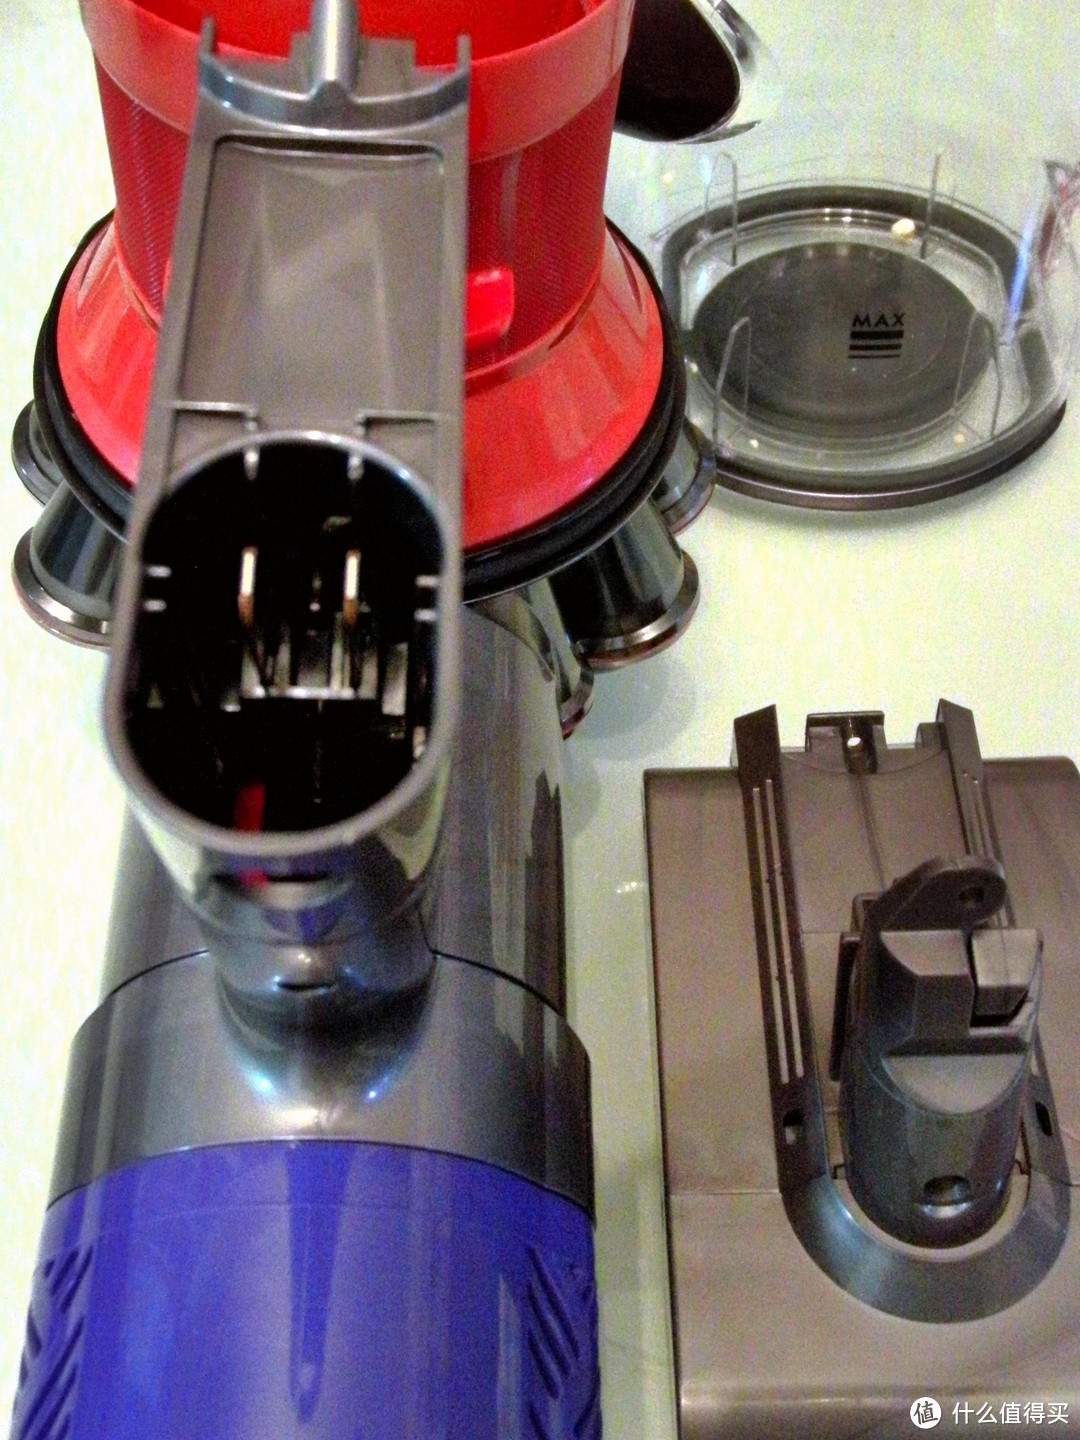 戴森V6手持吸尘器选购、升级和维修指南